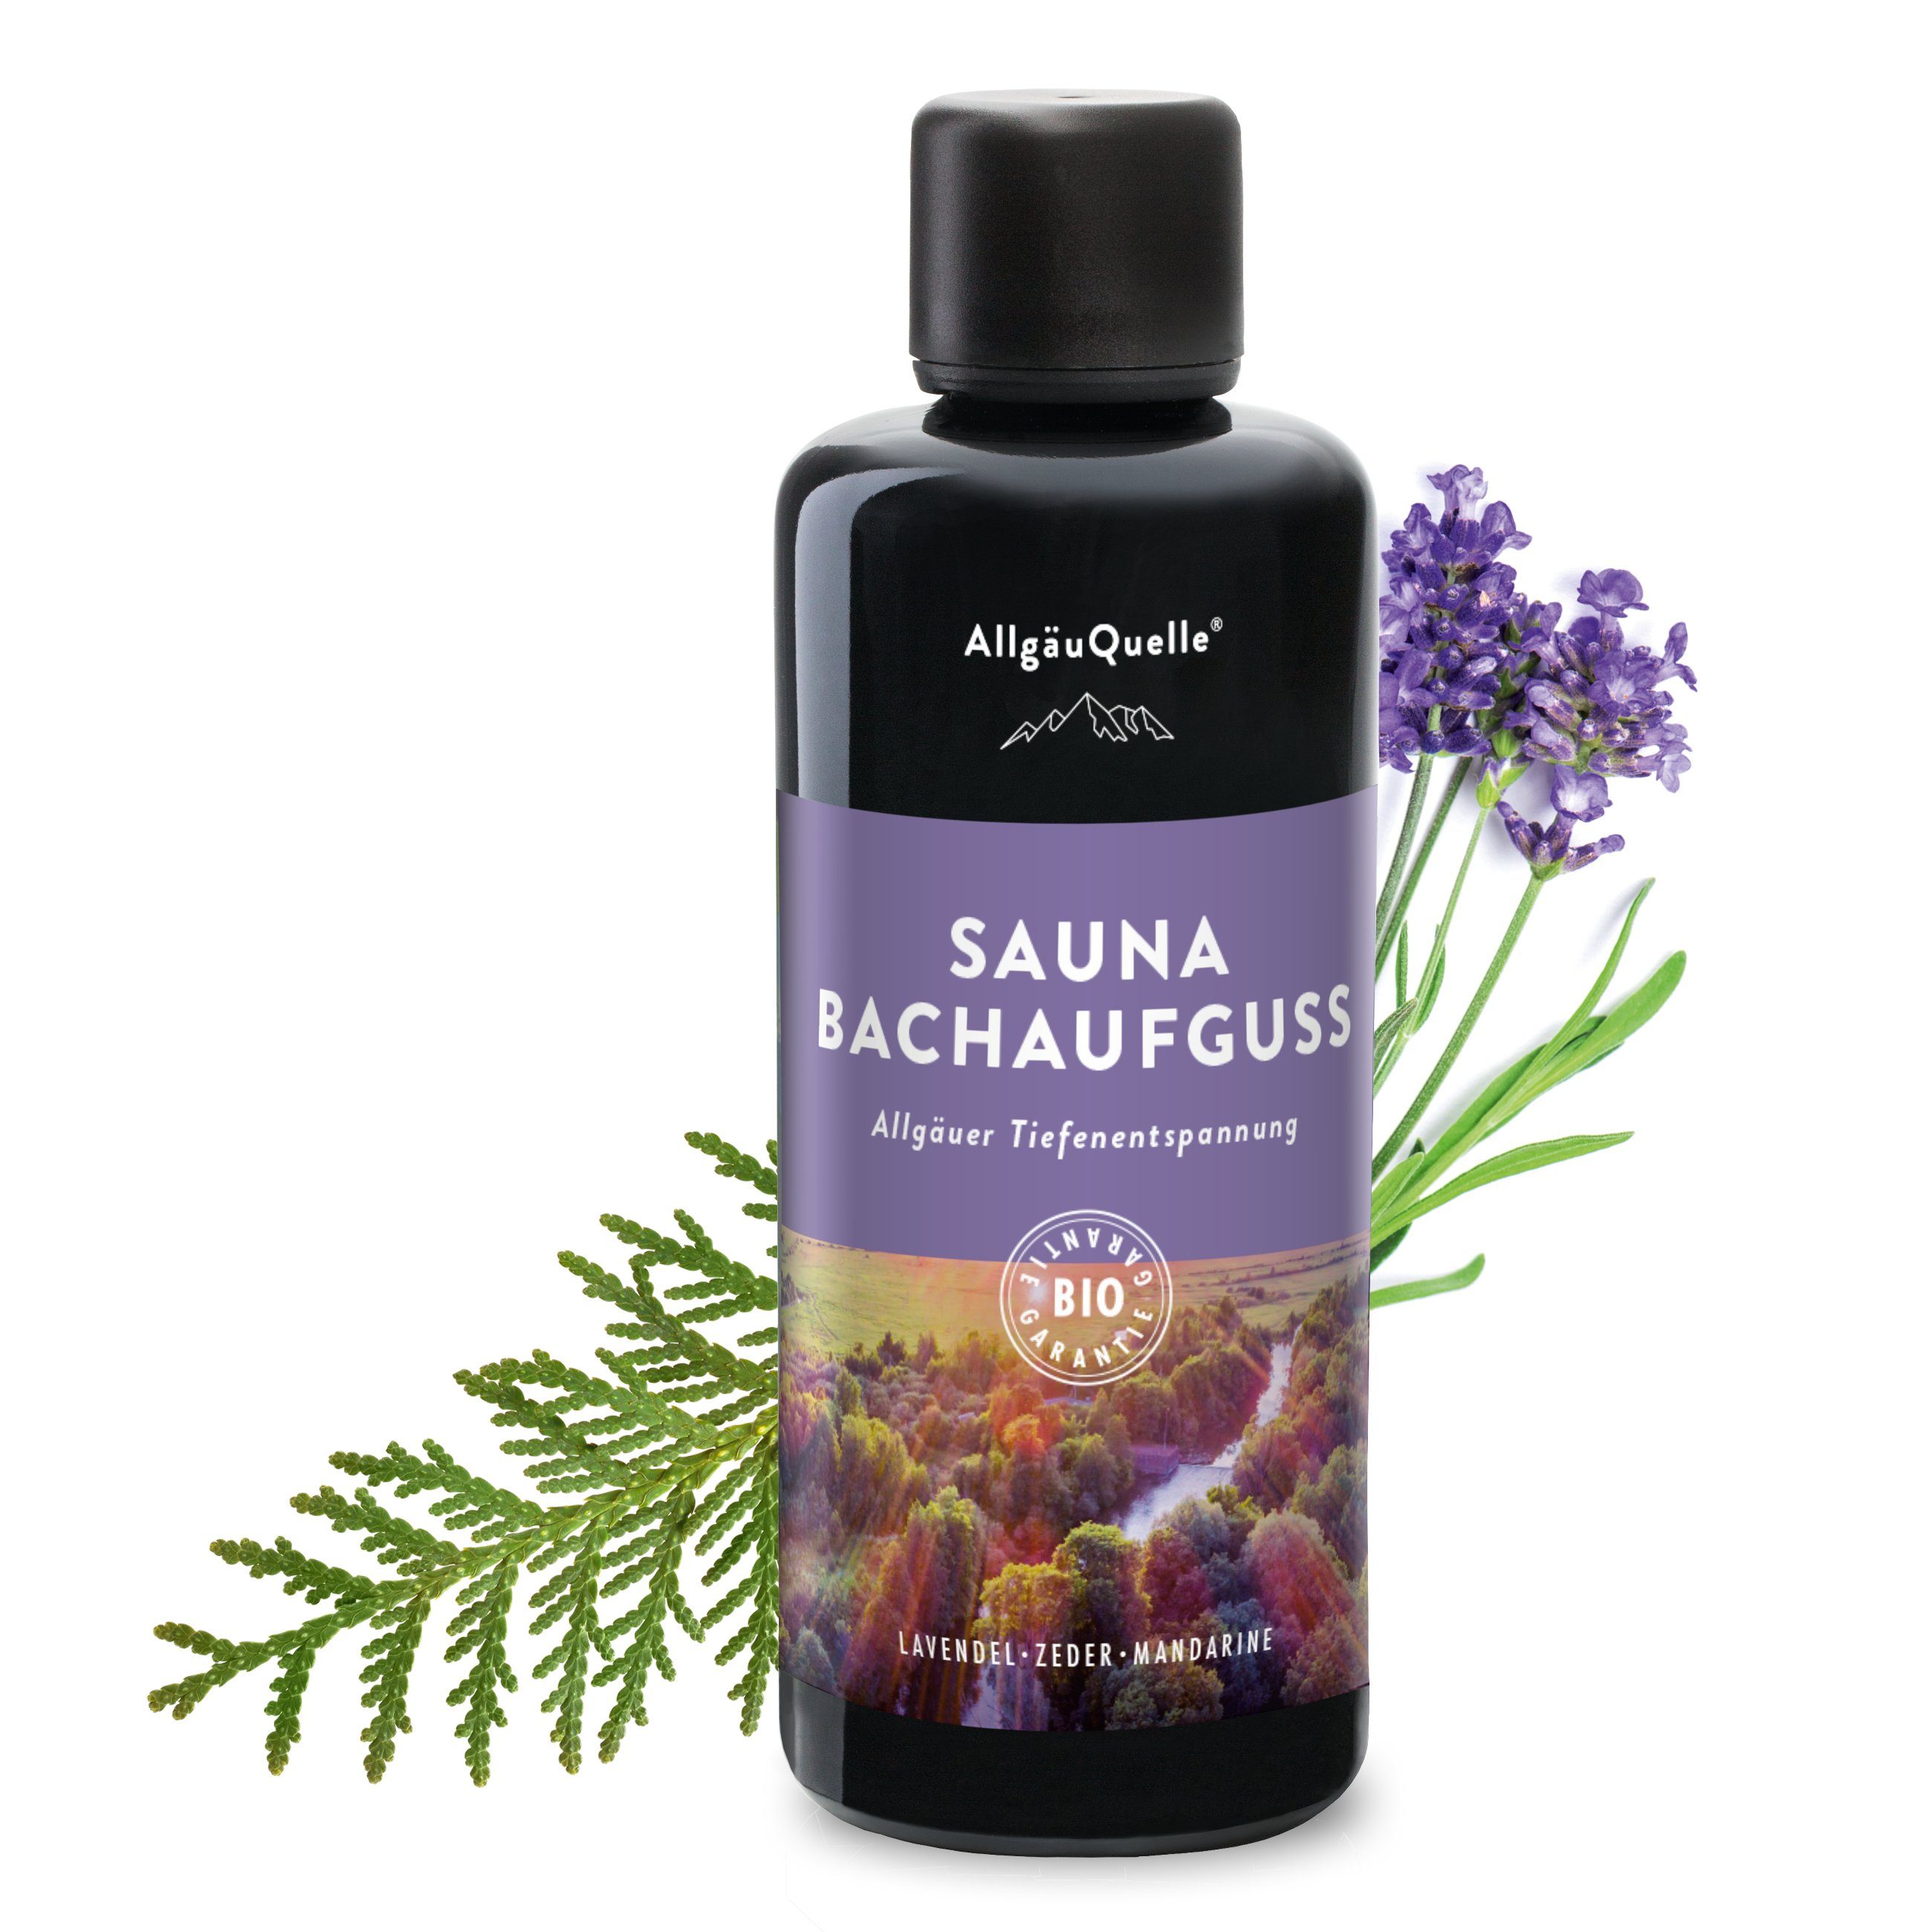 Allgäuquelle Sauna-Aufgussset Bio Saunaaufguss Bachaufguss Saunaduft (1 x 100ml) mit Lavendel, Zeder und Mandarine